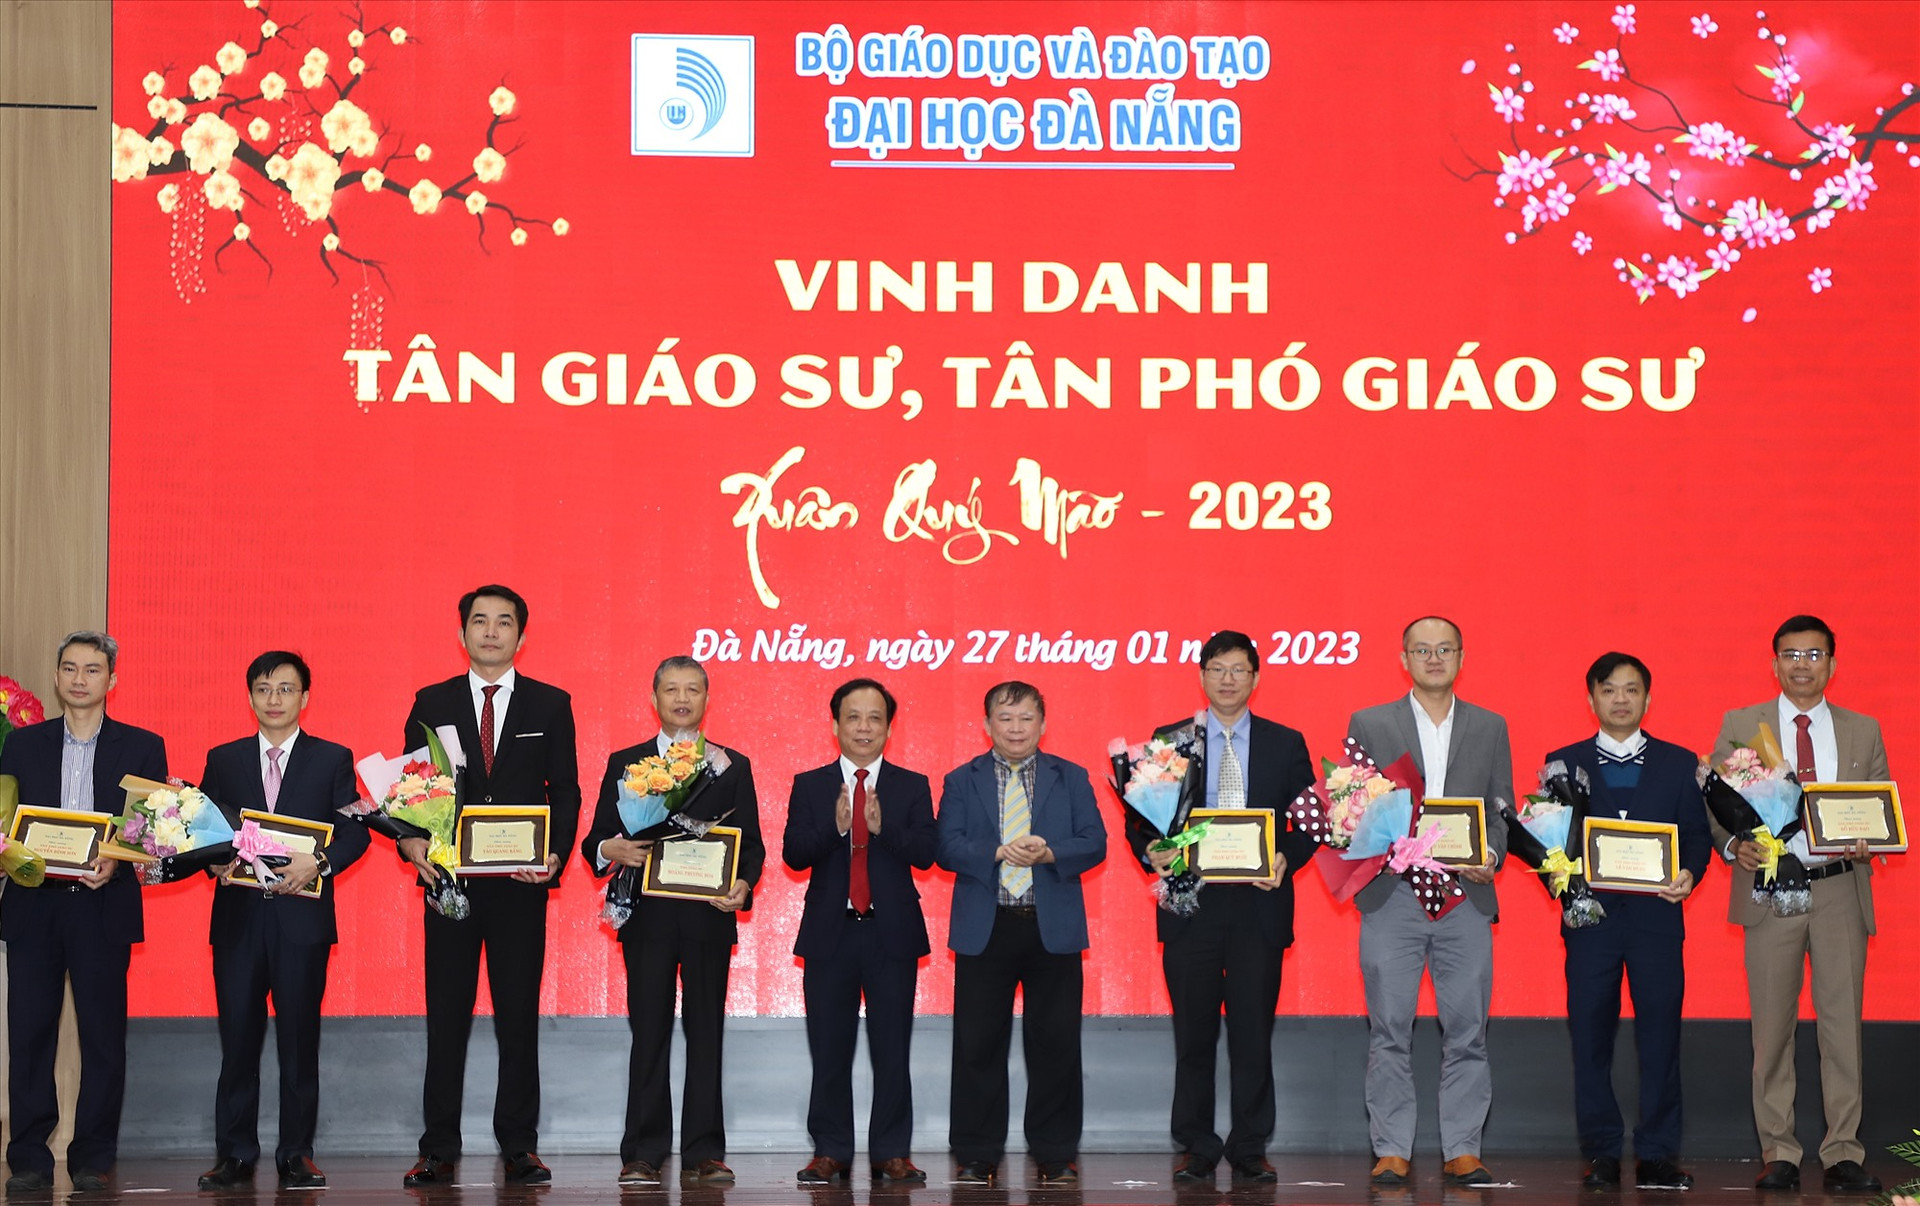 PGS.TS Nguyễn Ngọc Vũ -Giám đốc ĐHĐN ( thứ 5 bên trái sang) vinh danh các tân Giáo sư, tân Phó Giáo sư của ĐHĐN năm 2022